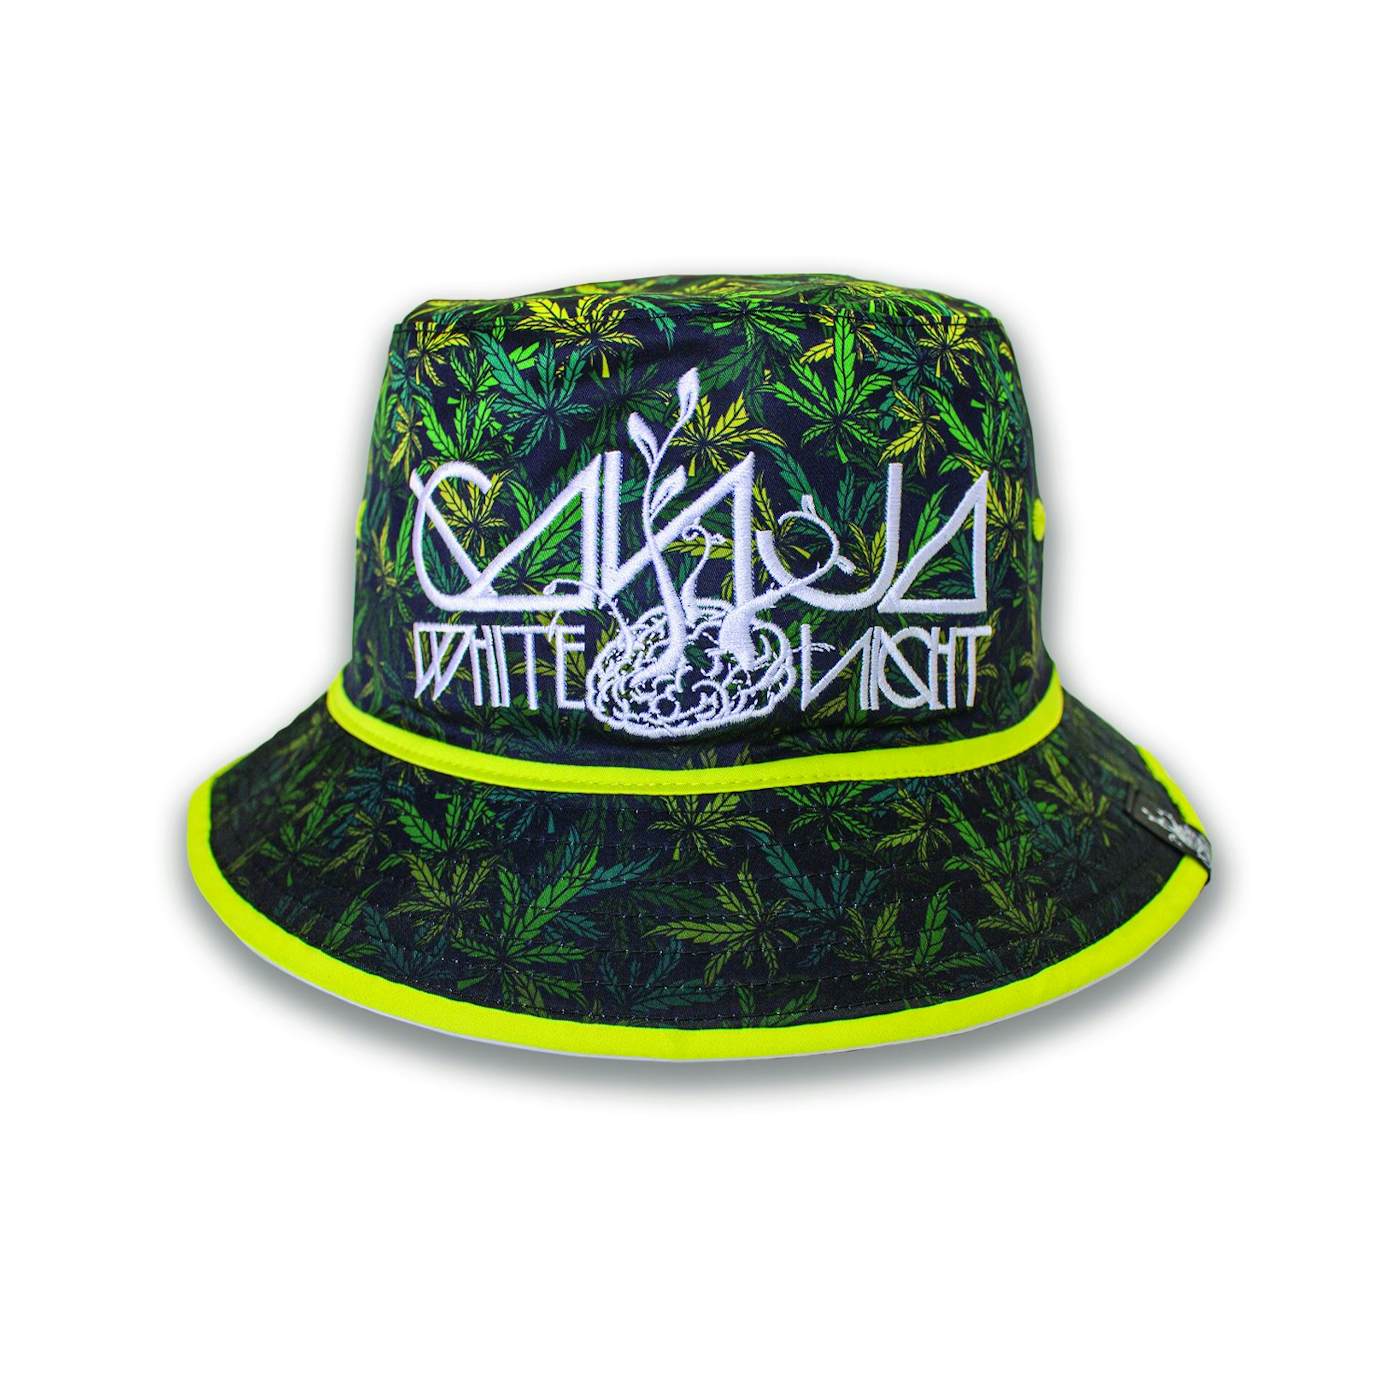 Nirvana Print Bucket Hat | Accessories | Grasshopper Goods